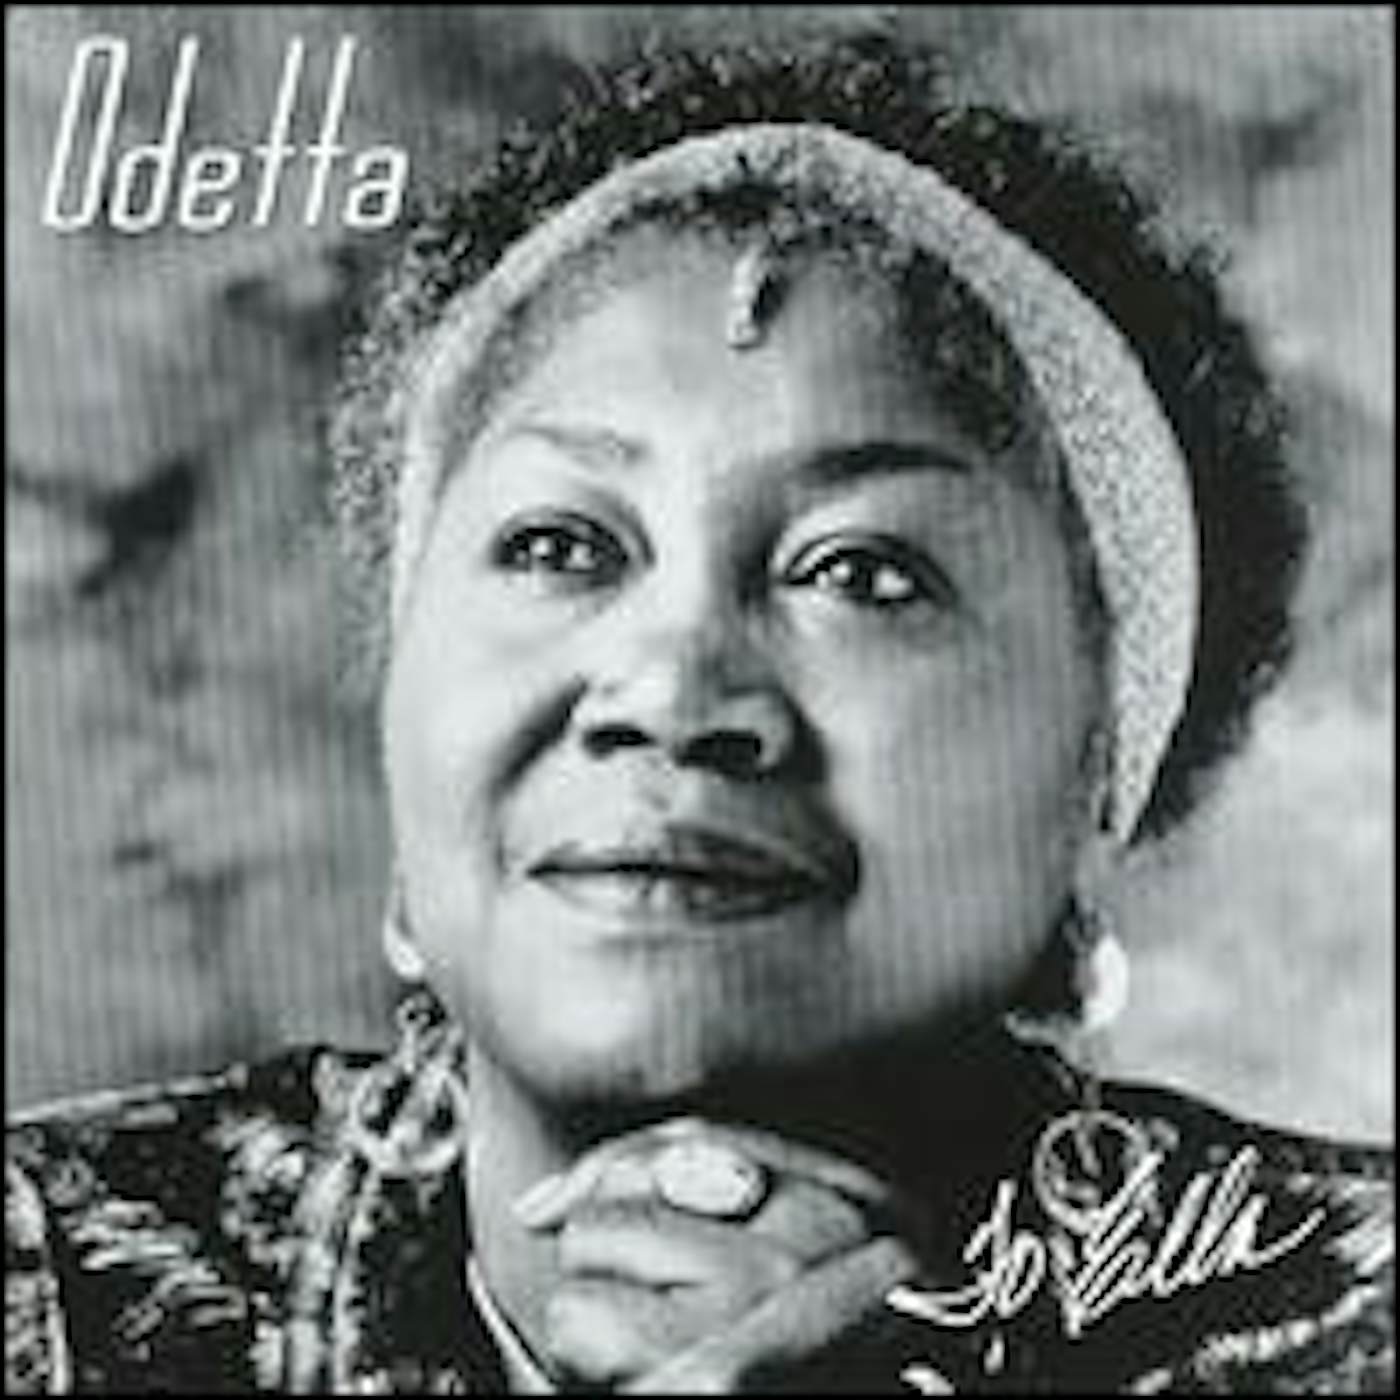 Odetta TO ELLA CD